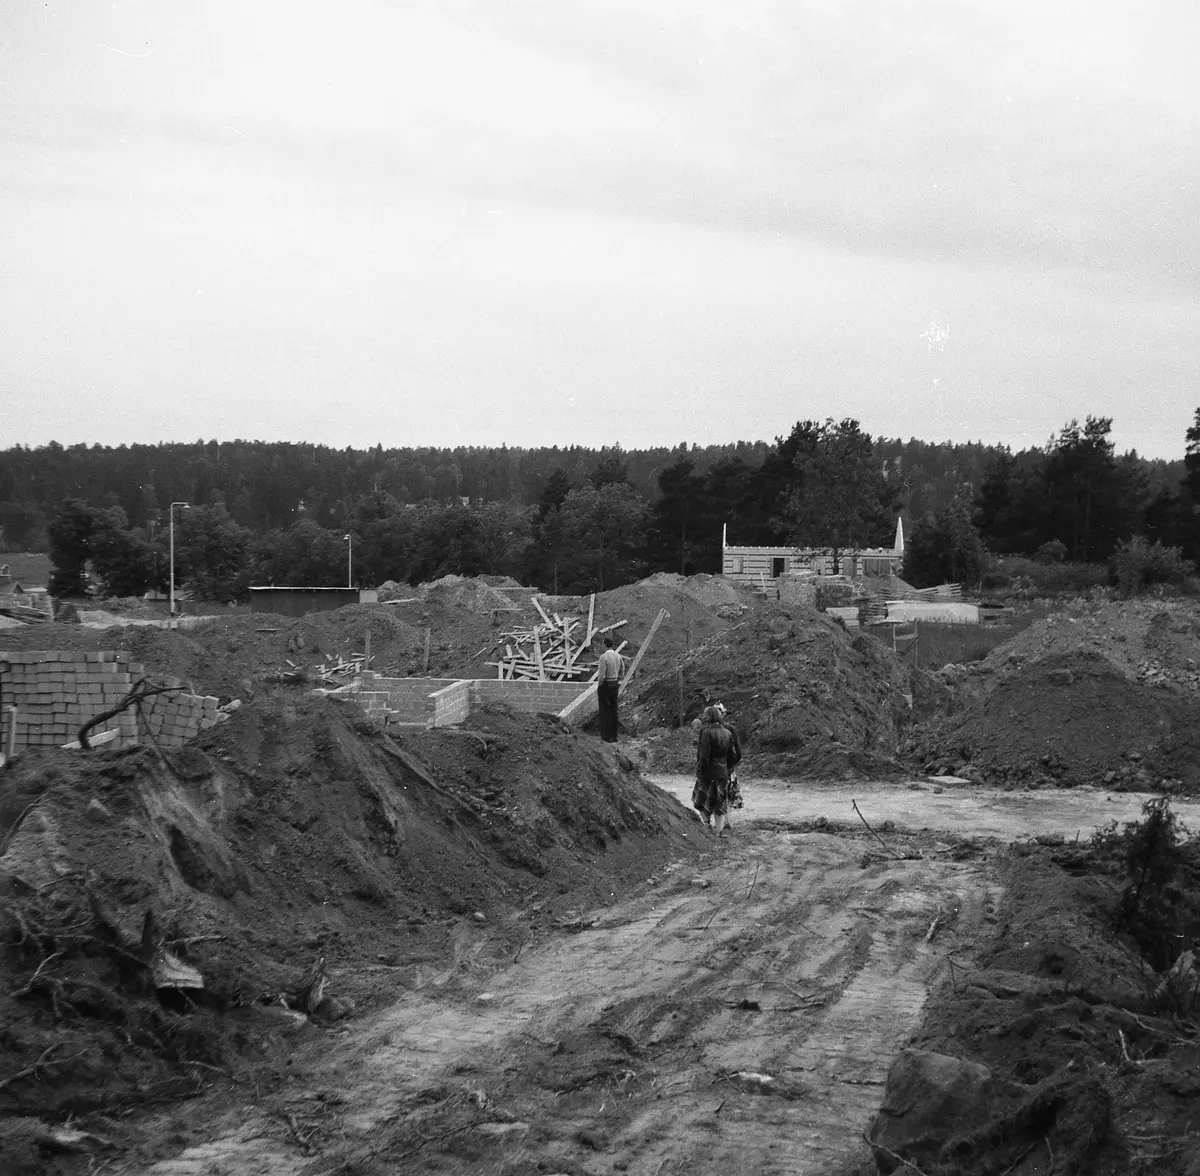 Bilden tagen vid området Falkvägen Eremitvägen där det tidigare låg en soptipp.
Skogen i fonden är Lahäll.
Örnstigen ligger åt höger utanför bild.